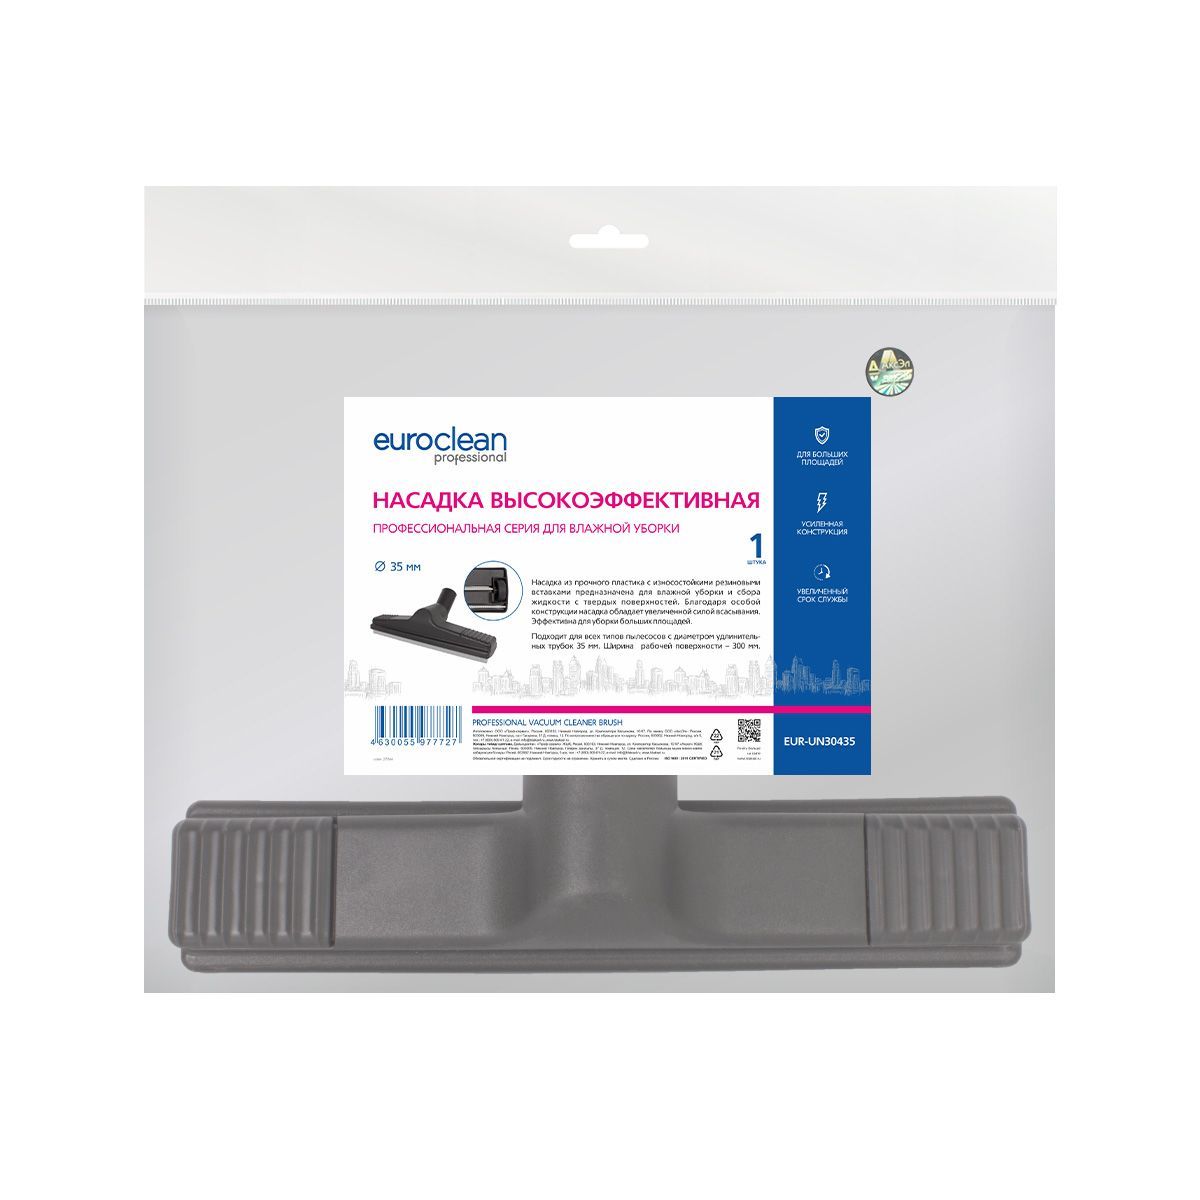 EUR-UN30435 Высокоэффективная насадка для профессионального пылесоса Euroclean для влажной уборки, под трубку 35 мм